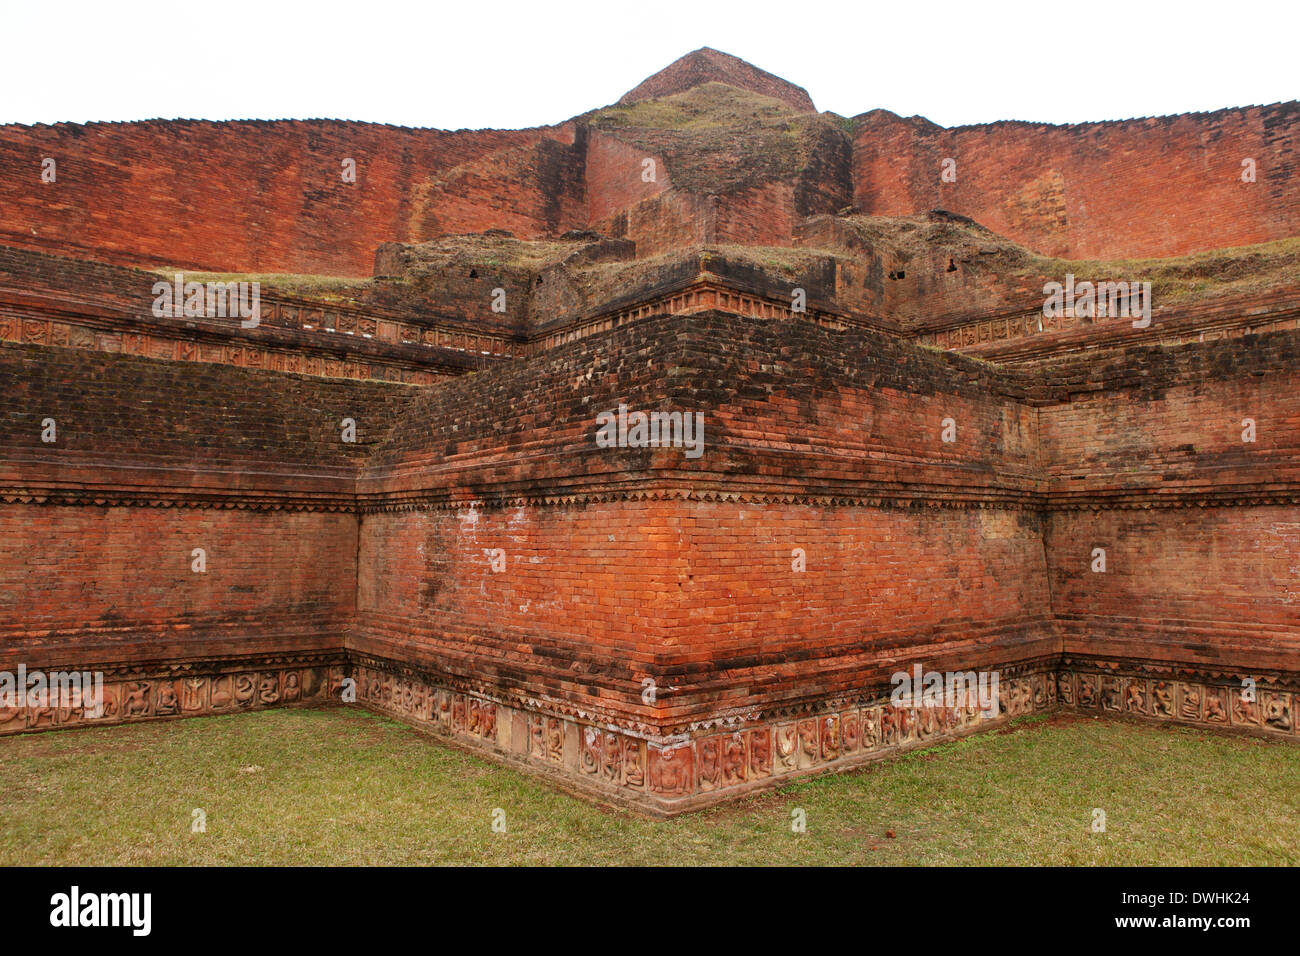 The three tiers of the ruins of the Somapura Mahavira Buddhist monastery at Paharpur, Bangladesh. Stock Photo